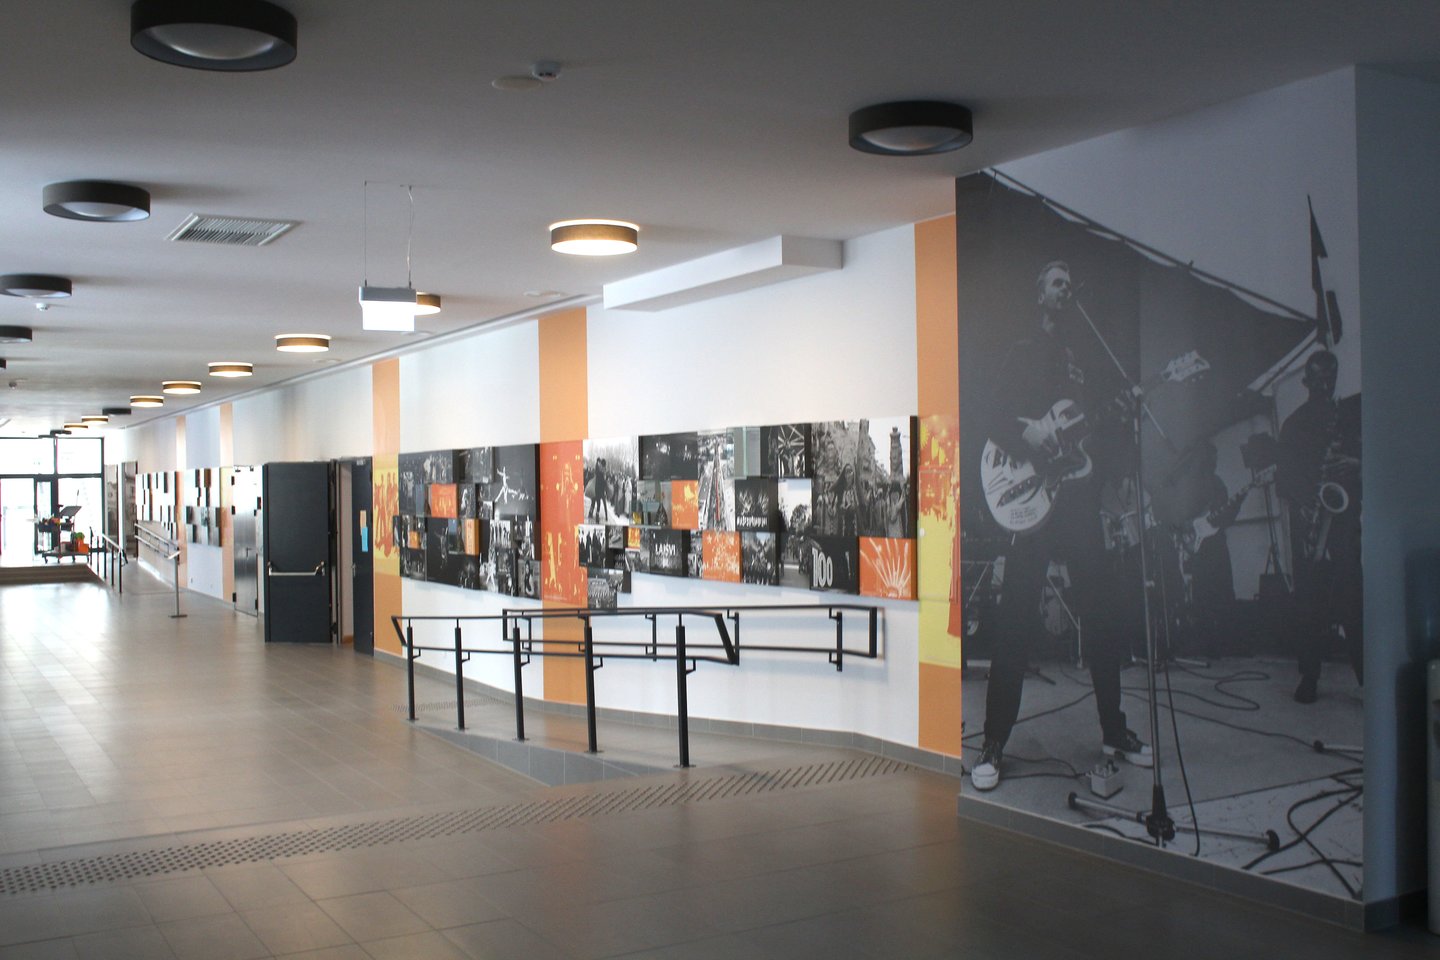 Daugiau nei dvejus metus trukusi Šiaulių kultūros centro renovacija kainavo per 4 milijonus eurų. <br> R.Vitkaus nuotr.